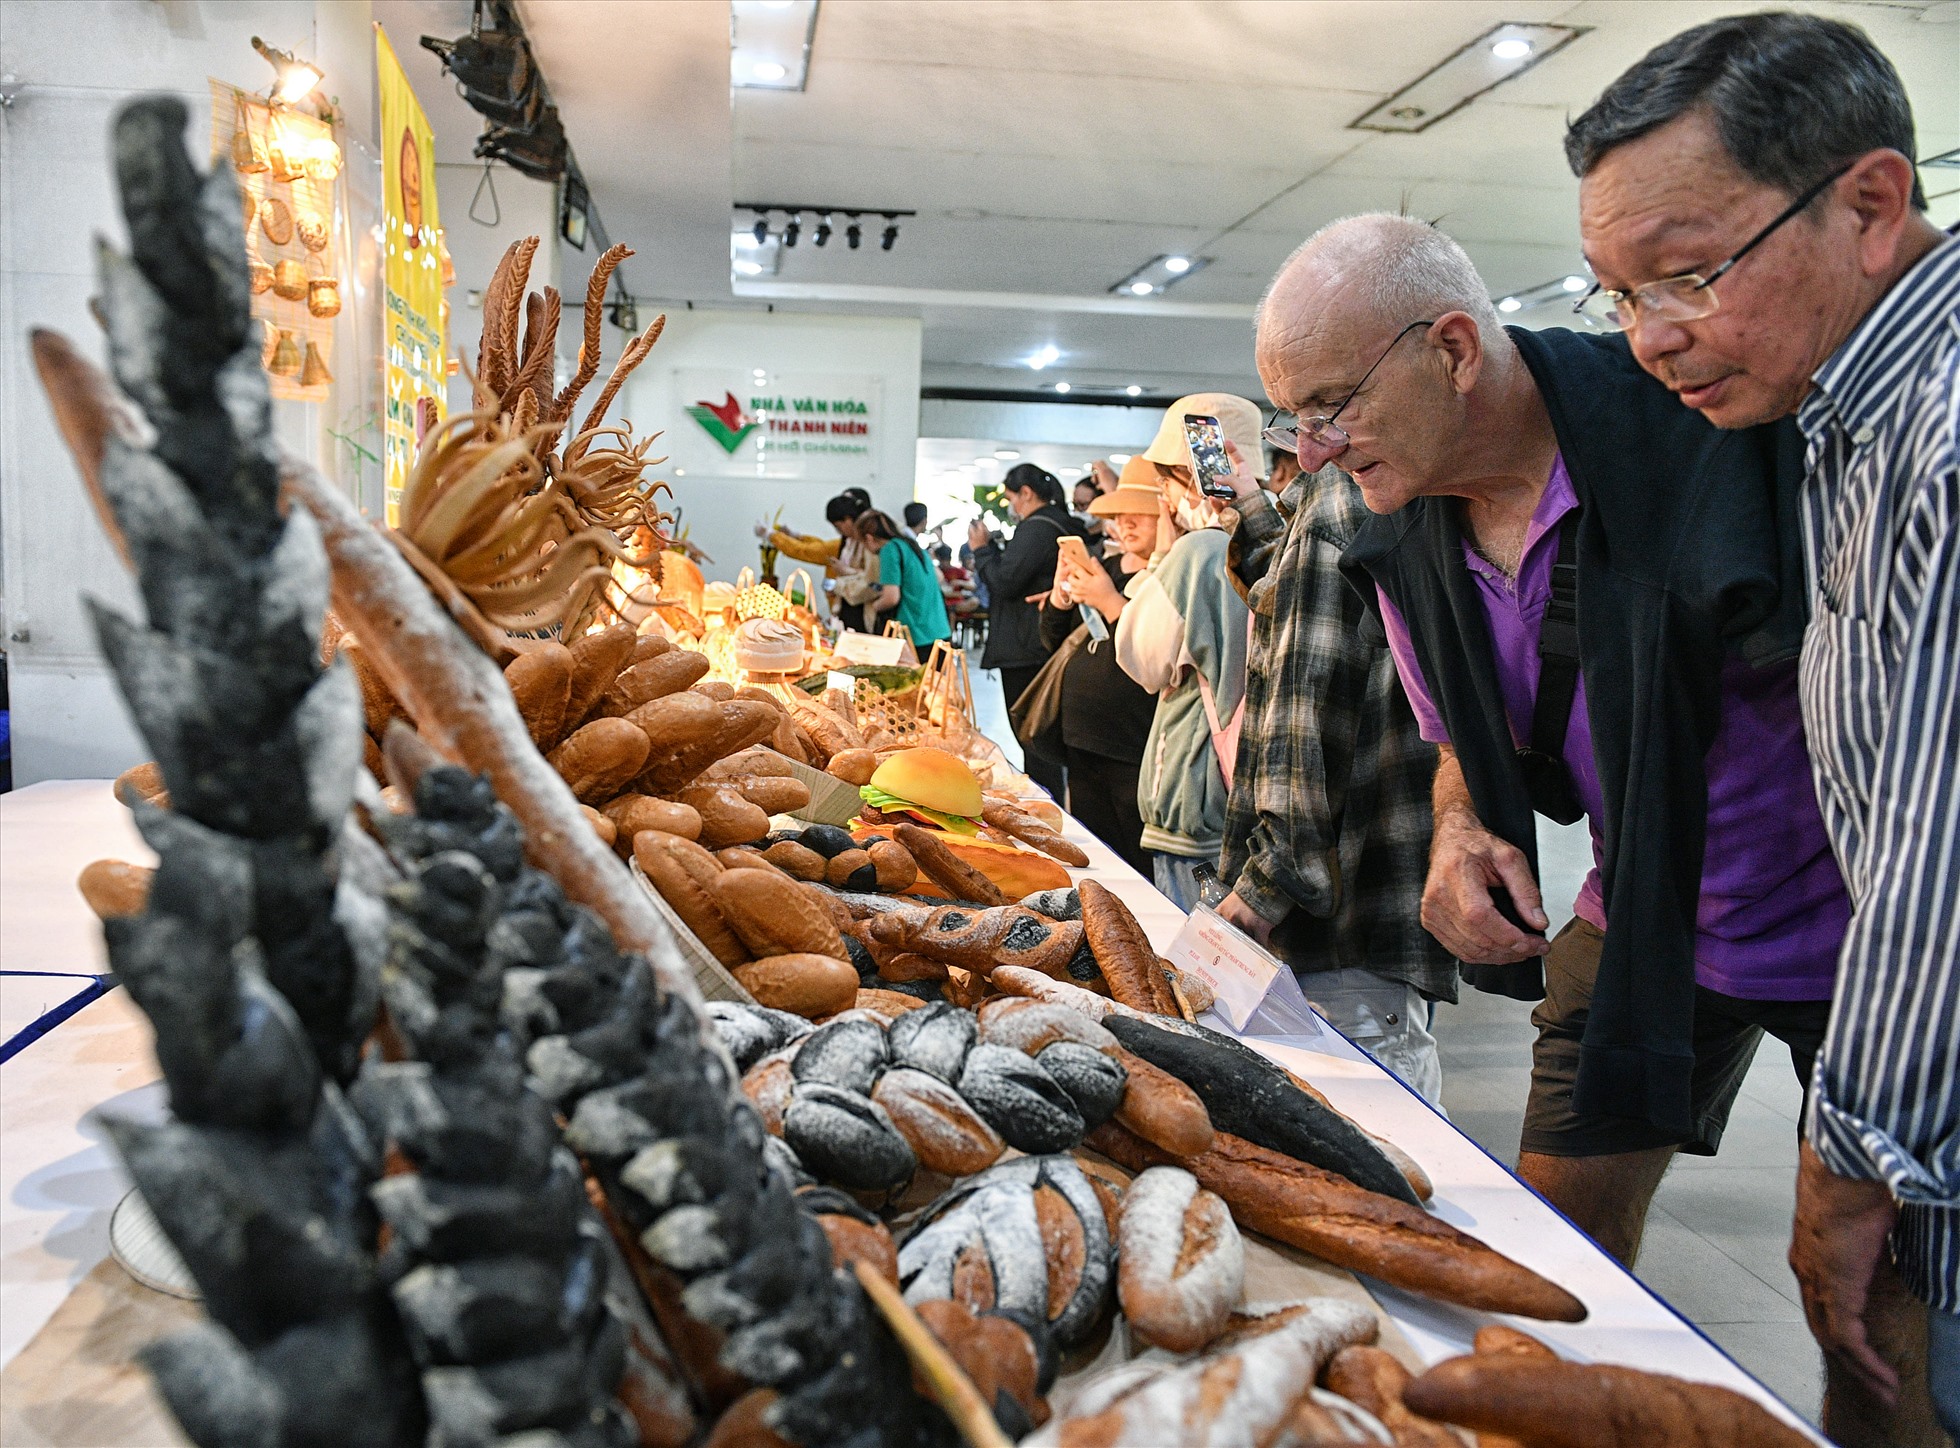 Du khách nước ngoài thích thú với các loại bánh mì khác nhau.